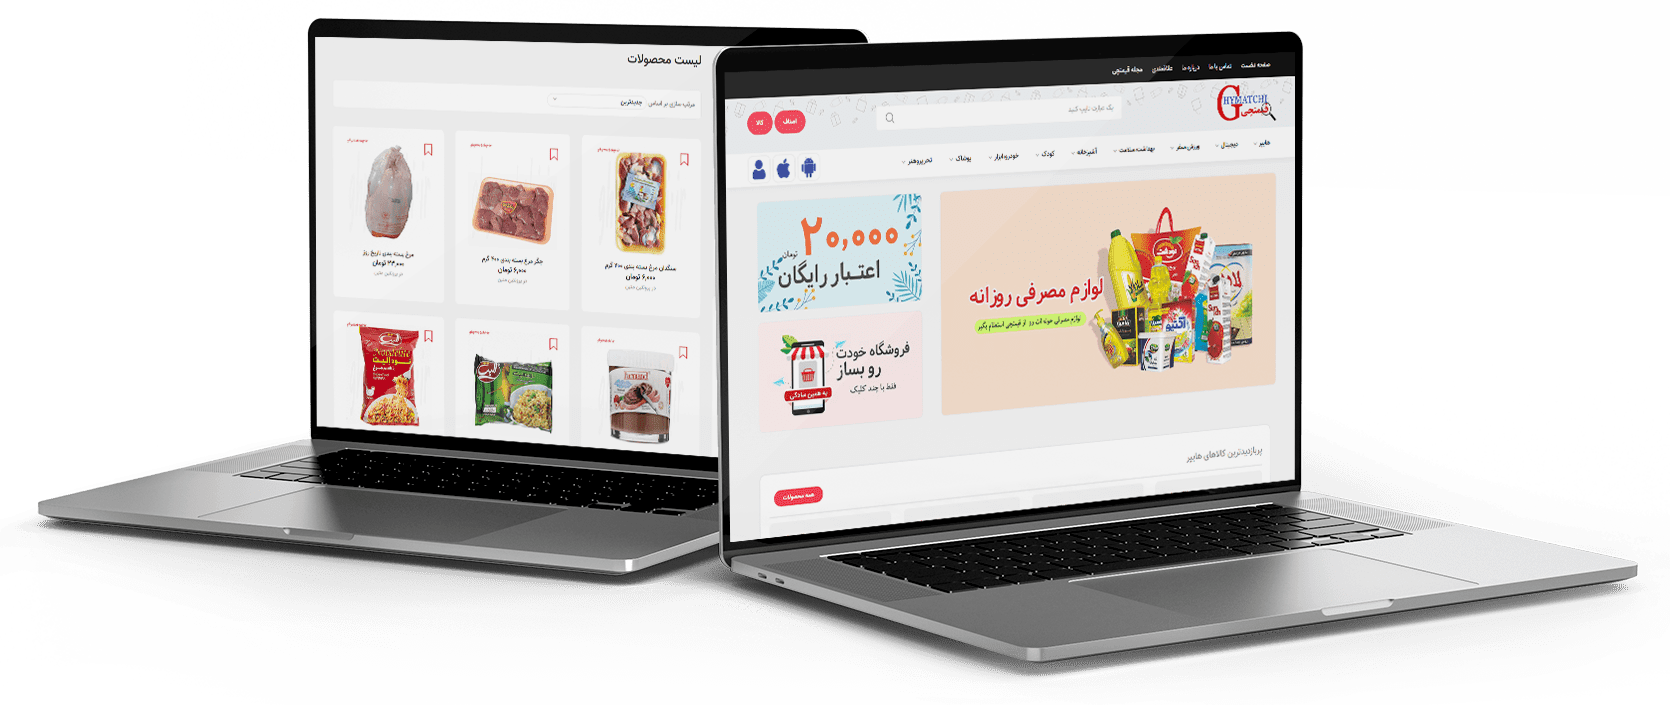  طراحی سایت فروشگاهی قیمتچی